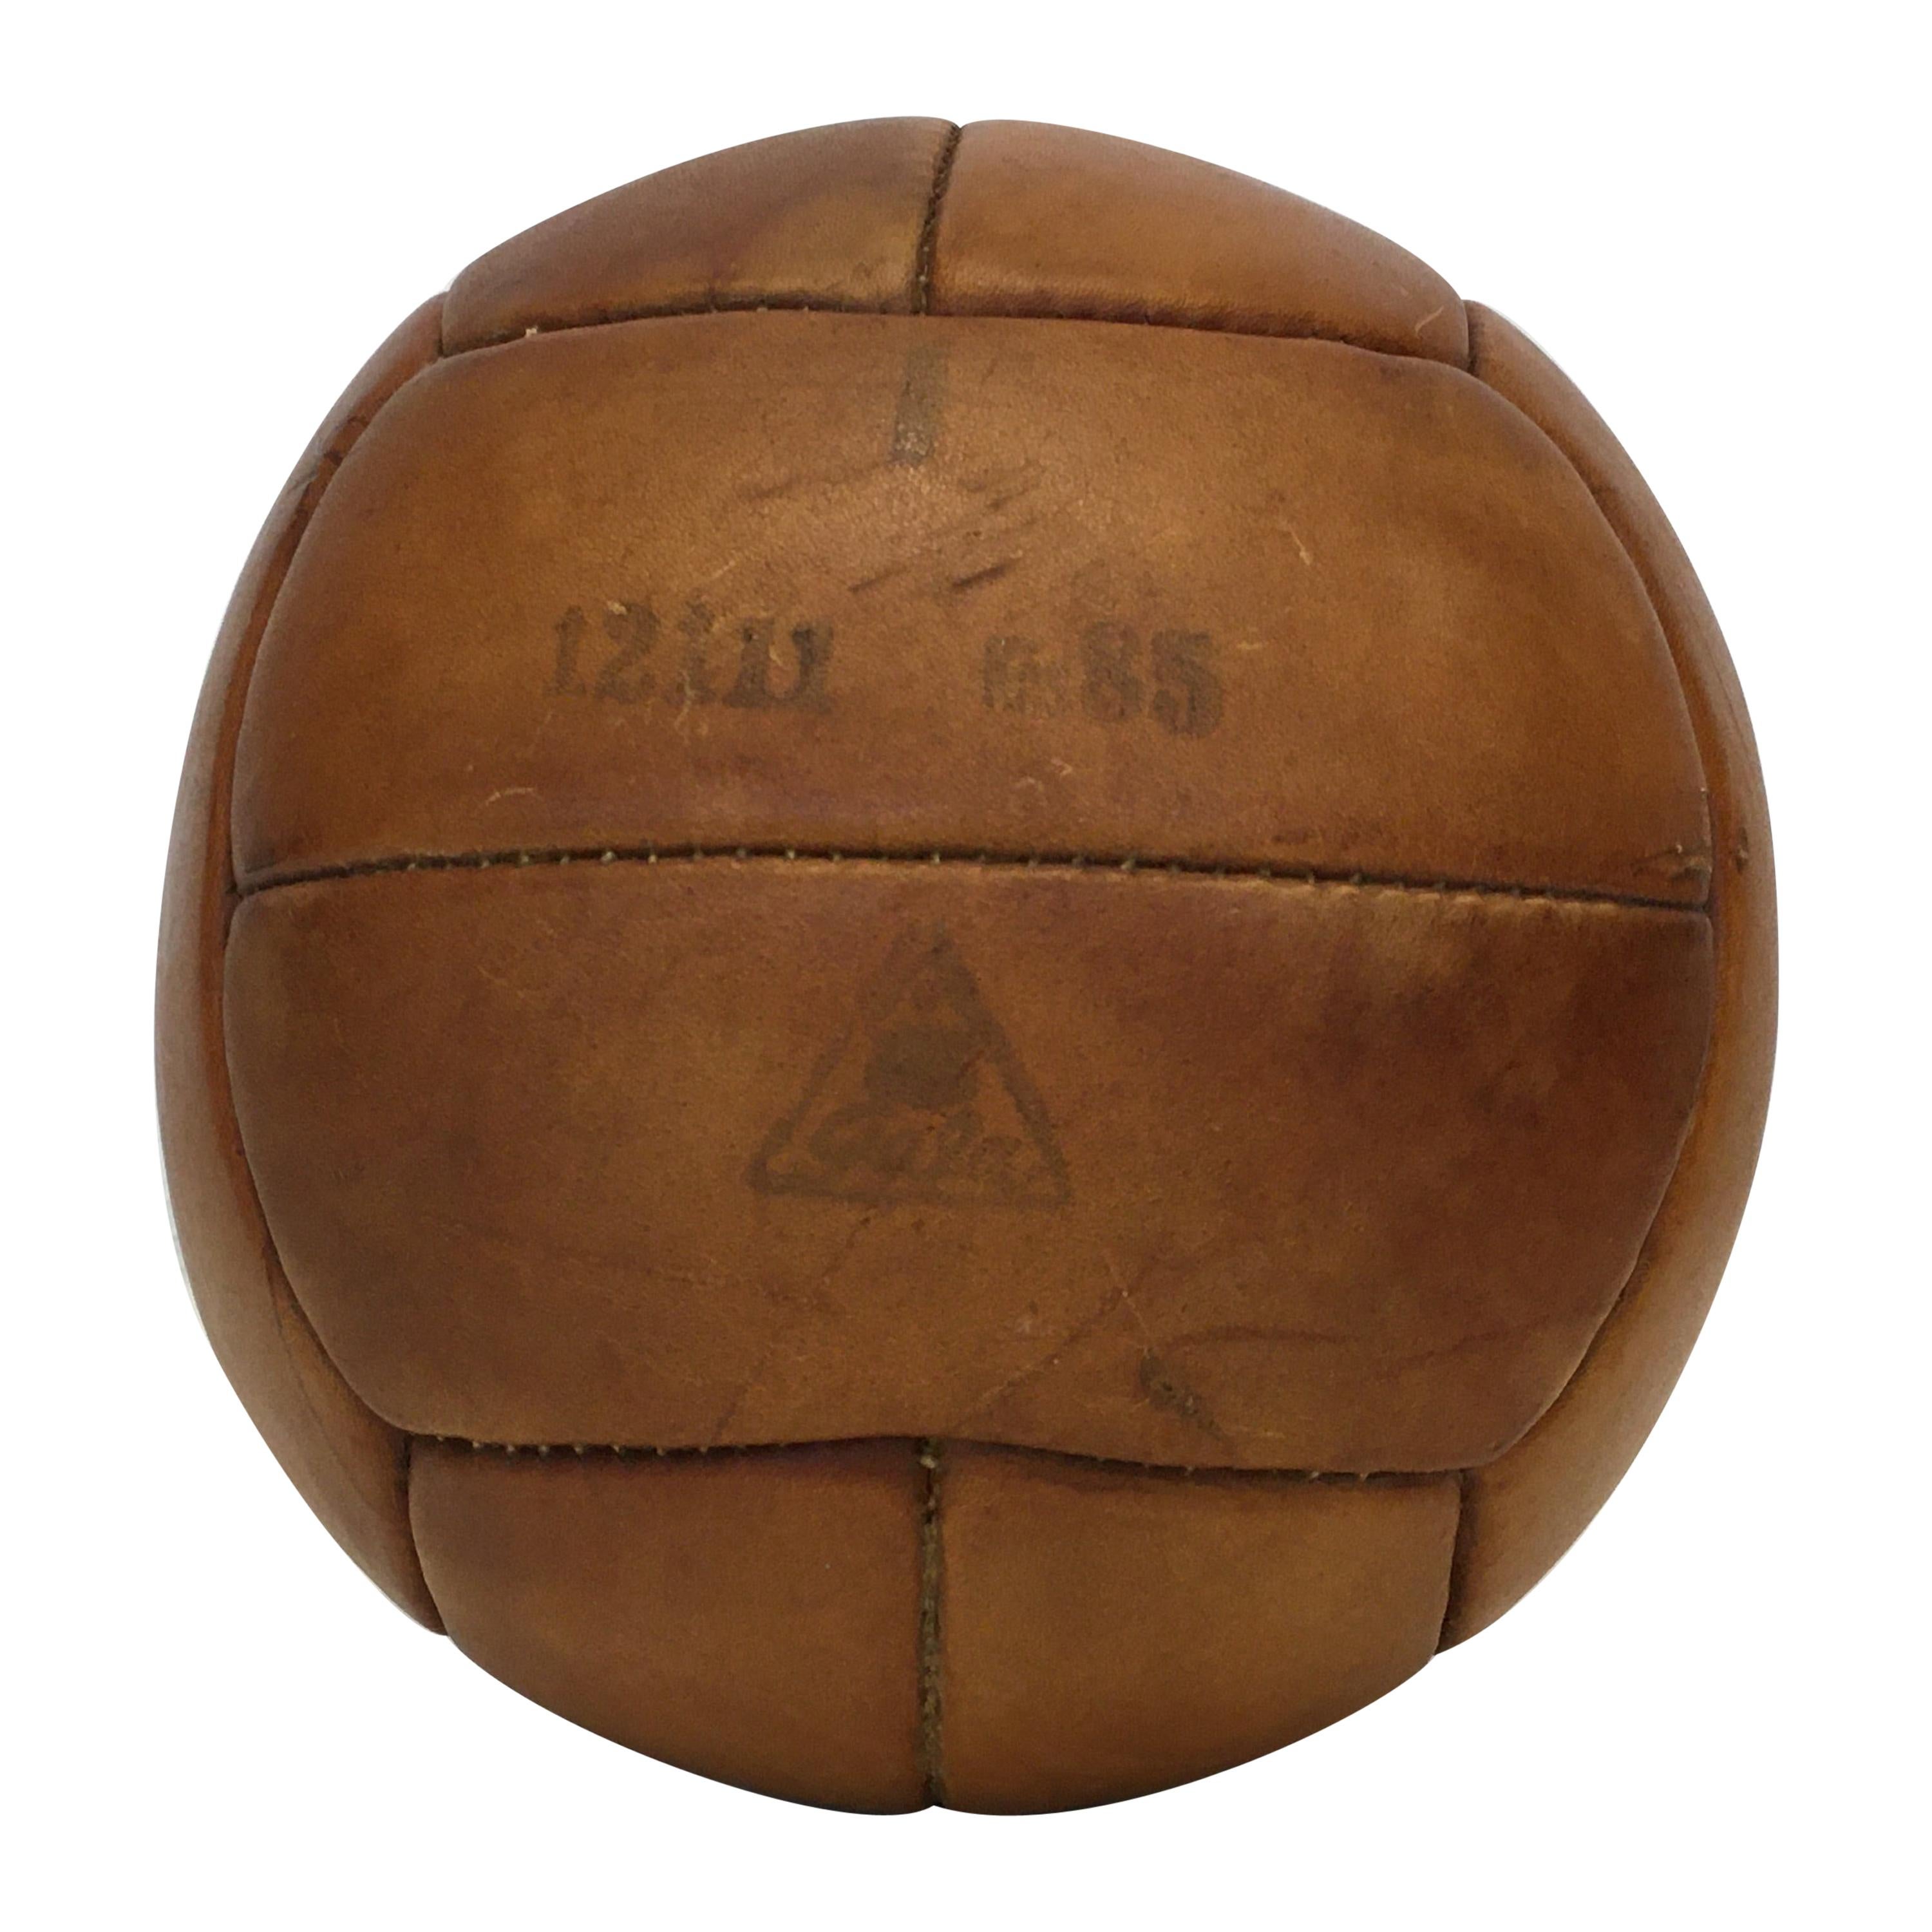 Vintage Brown Leather Medicine Ball, 1kg, 1930s